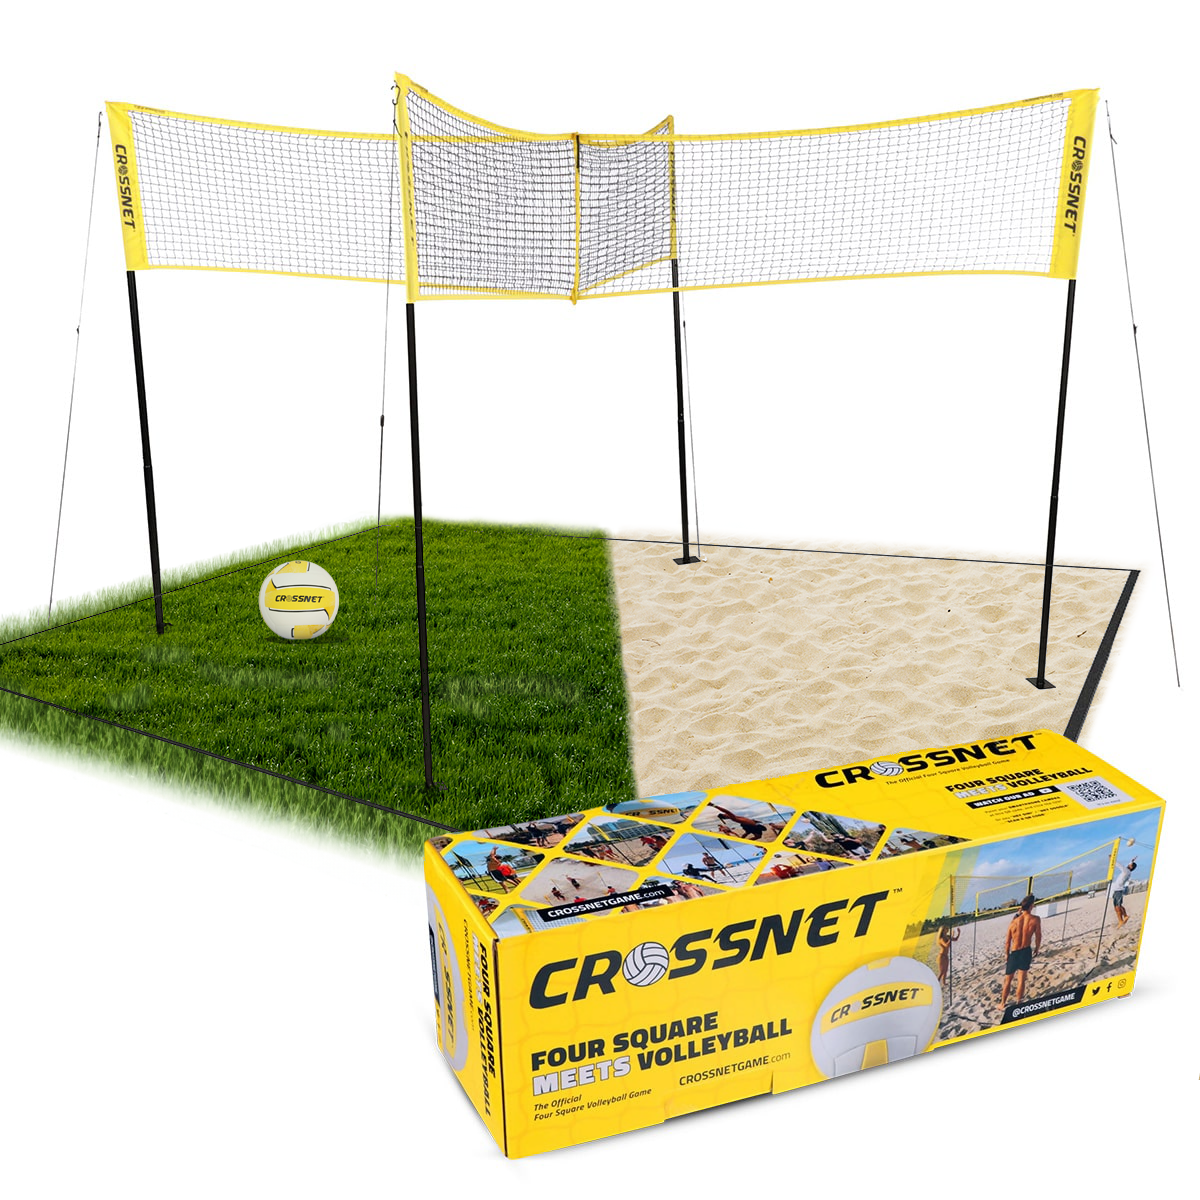 CROSSNET for SOCCER - Four Square Meets Soccer by CROSSNET — Kickstarter